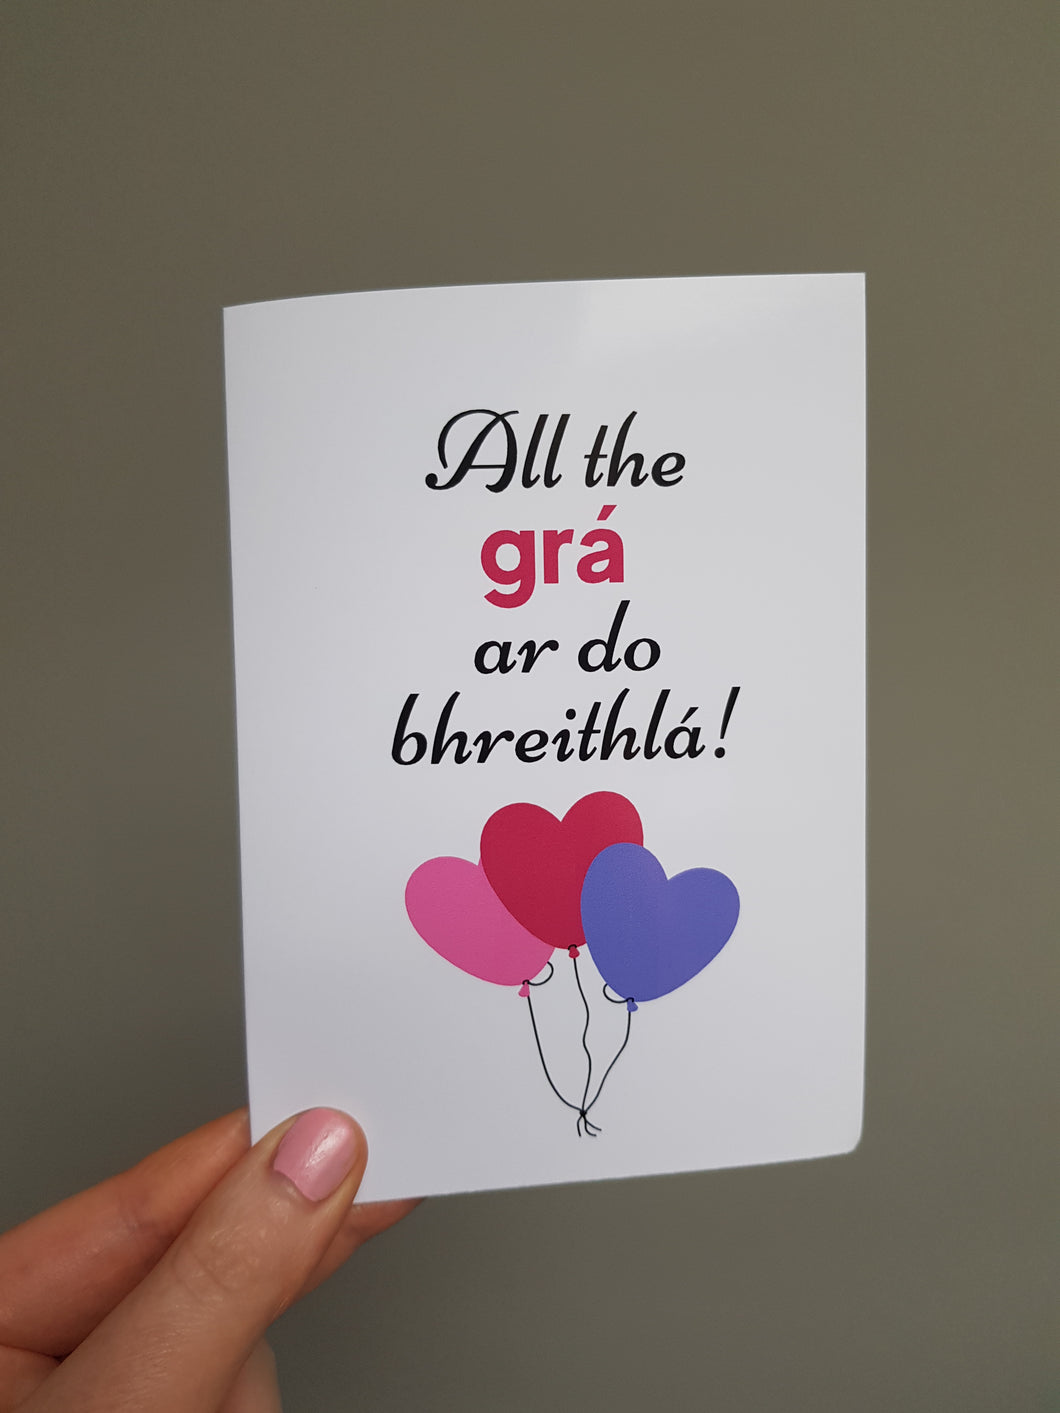 Gaeilge Card: All the grá ar do bhreithlá!